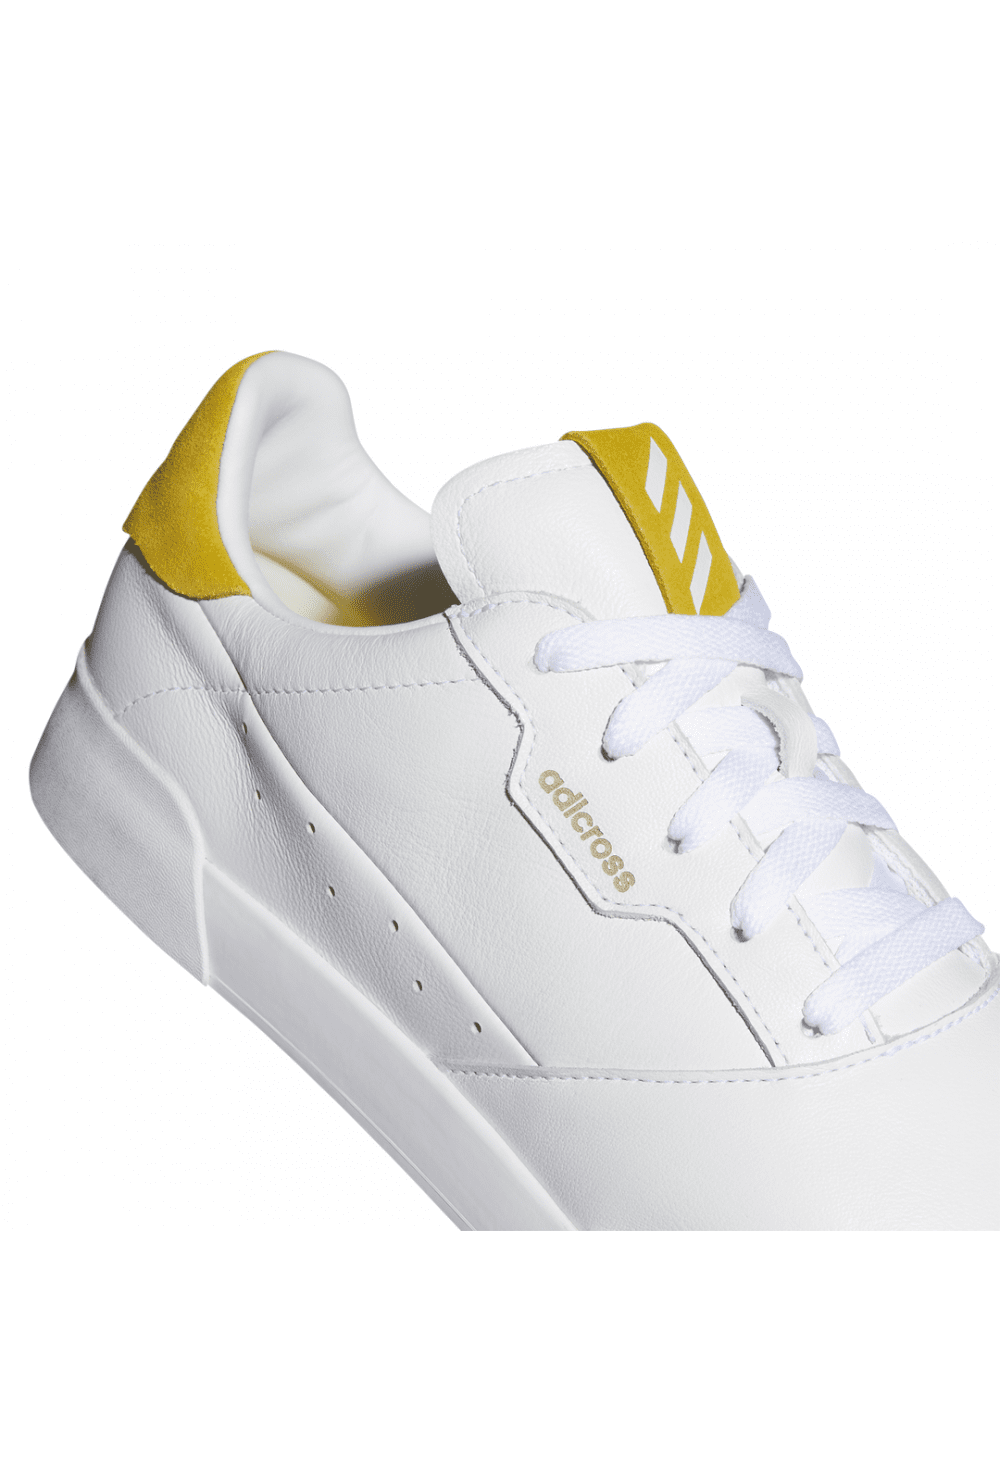 adidas Adicross Retro Golf Shoes H04857